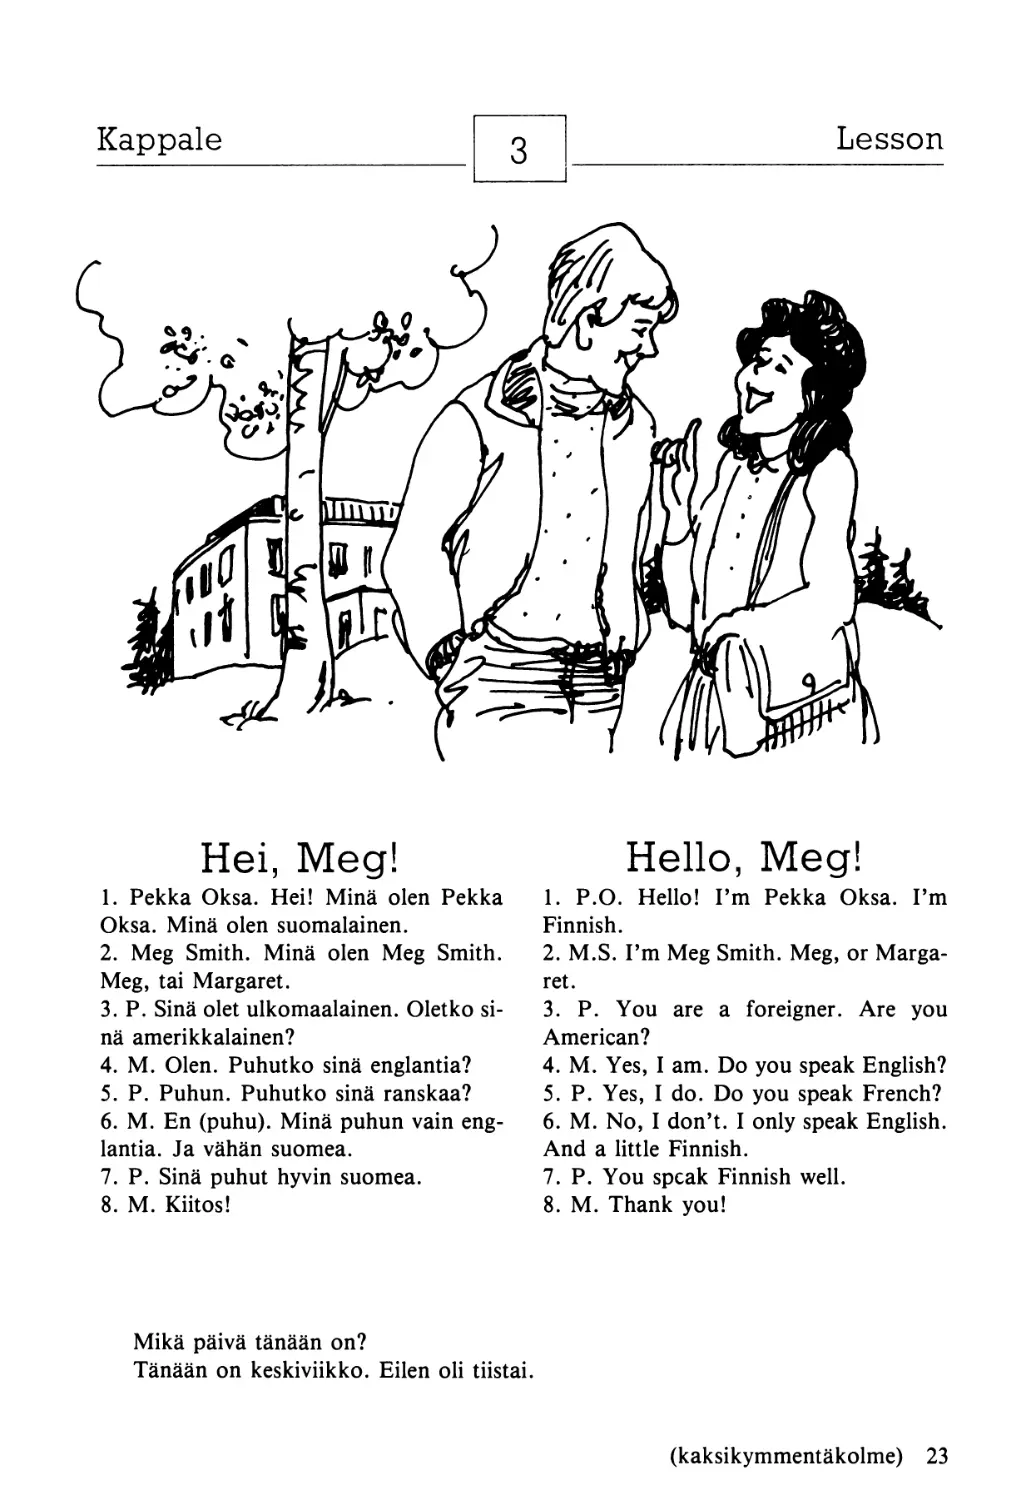 3. Hei, Meg! — Hello, Meg!